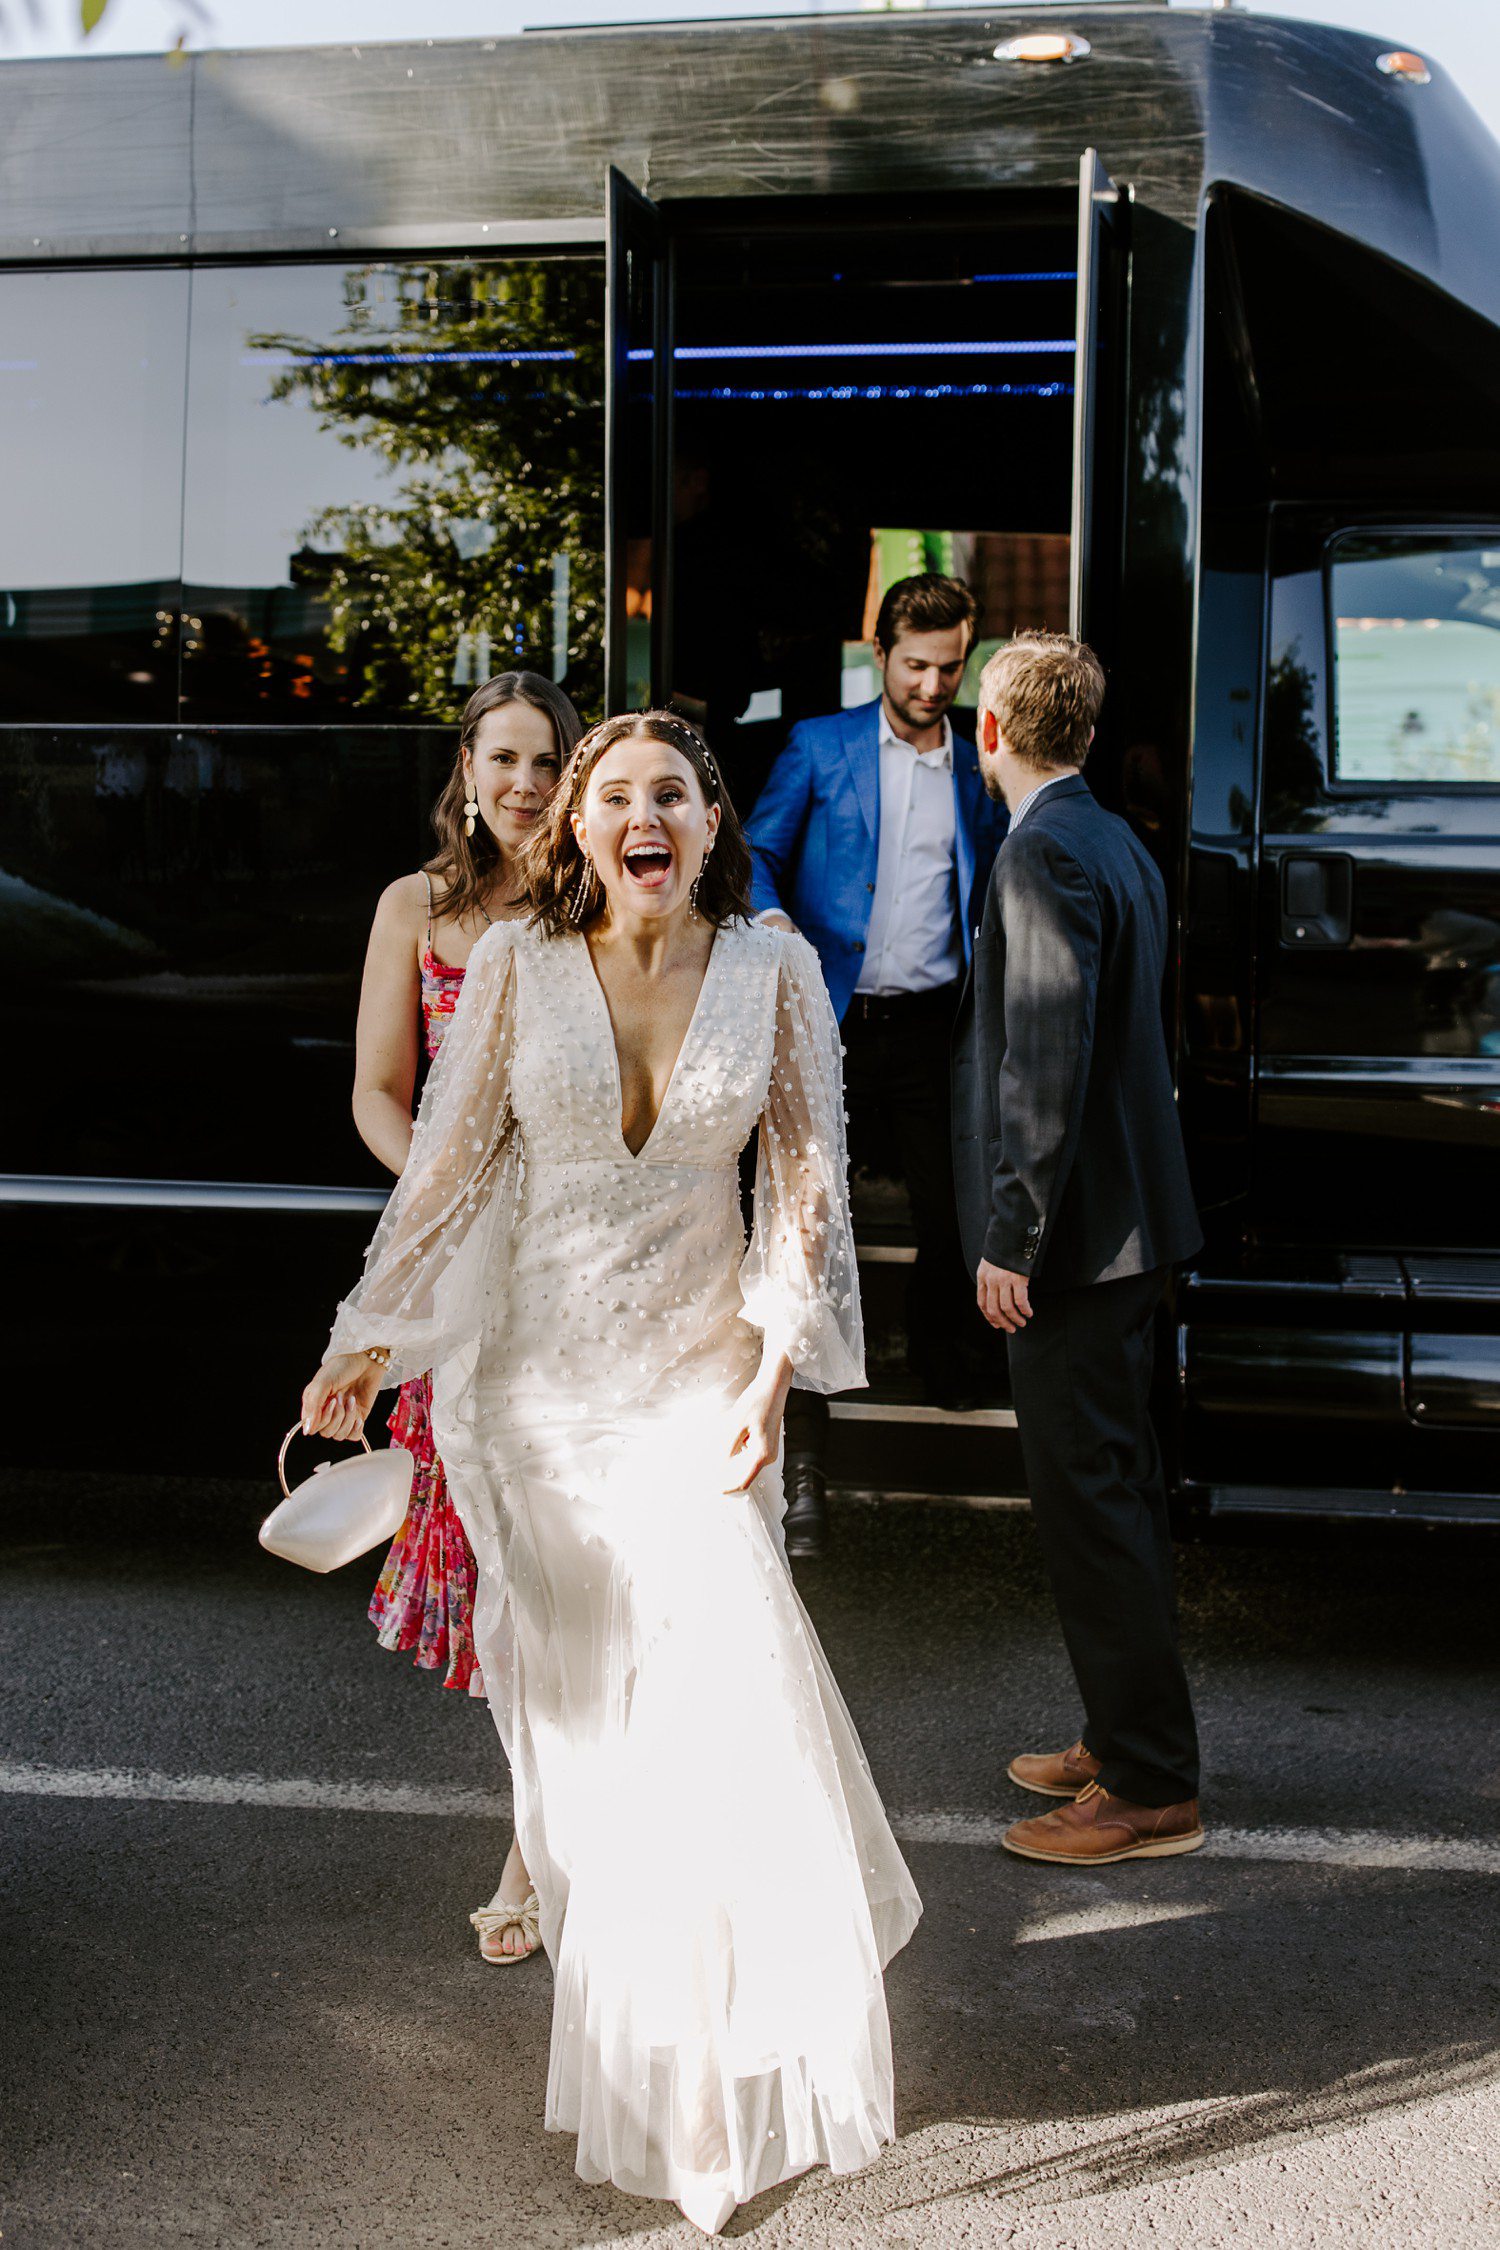 Las Vegas bride walking off bus